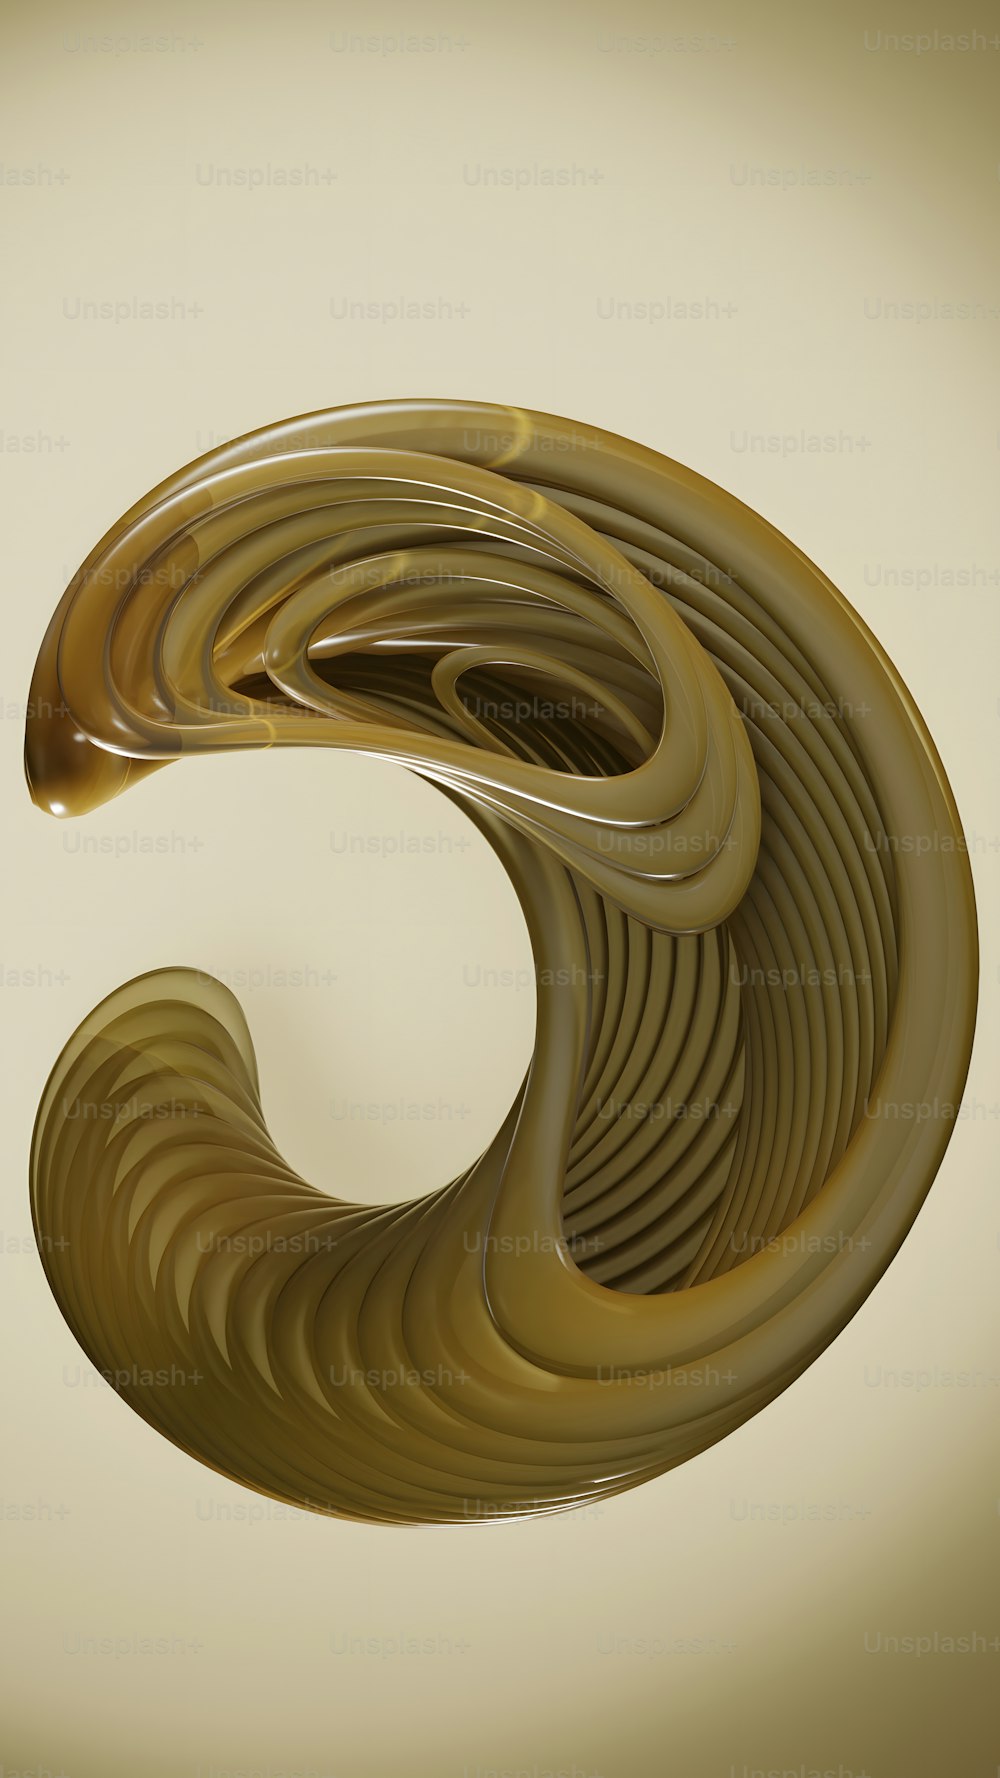 un'immagine generata al computer di un oggetto simile a una spirale